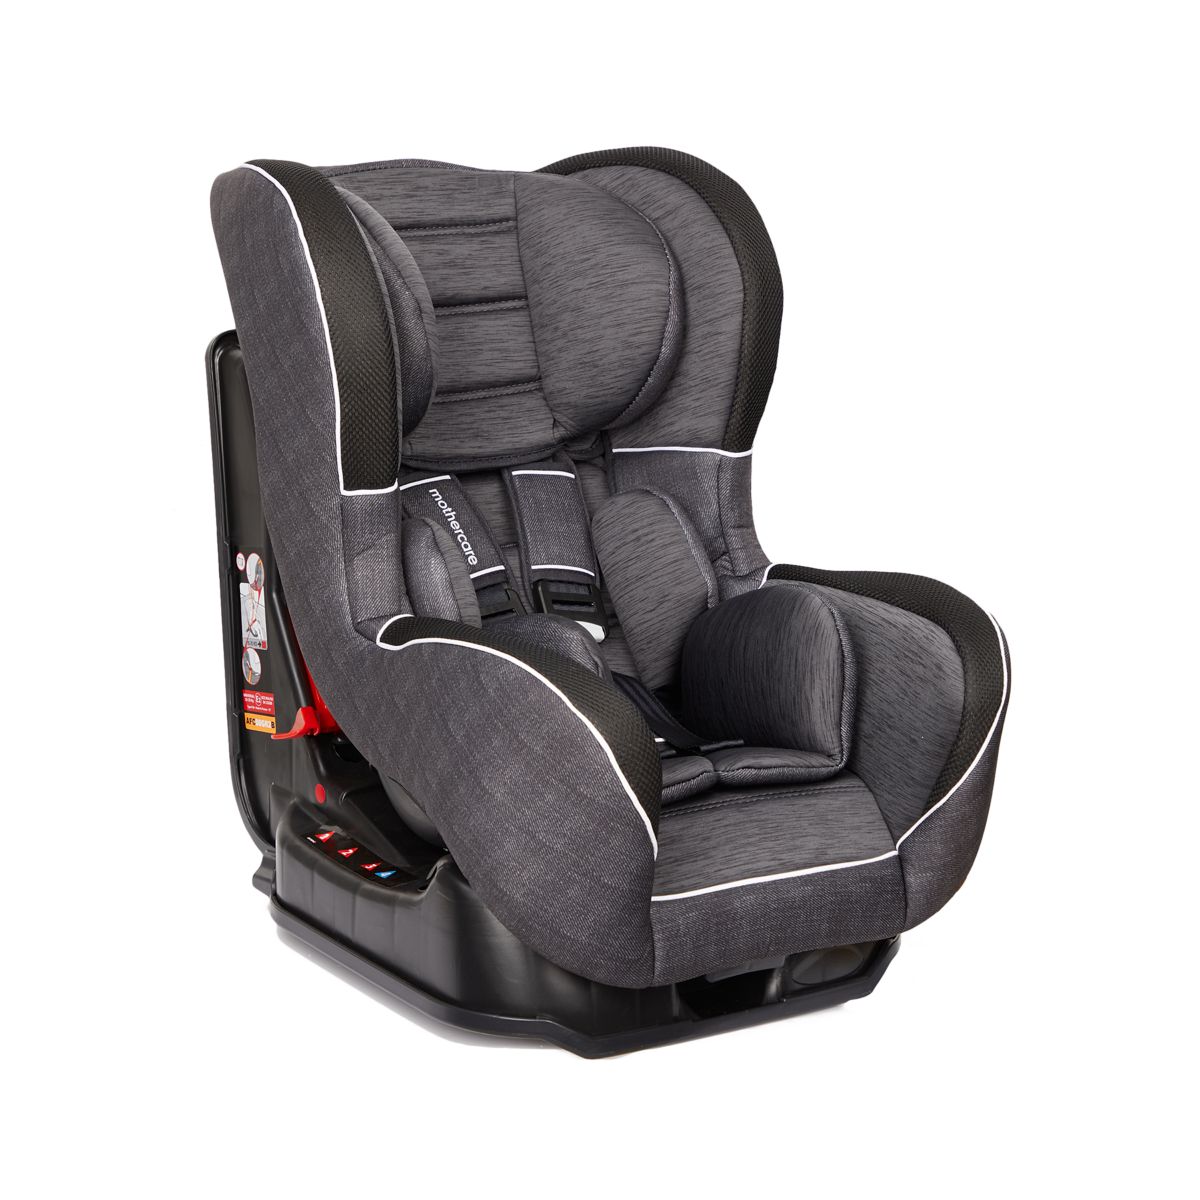 mothercare - ghế ngồi ô tô dành cho trẻ từ sơ sinh đến 25kg 7 tuổi vienna 2